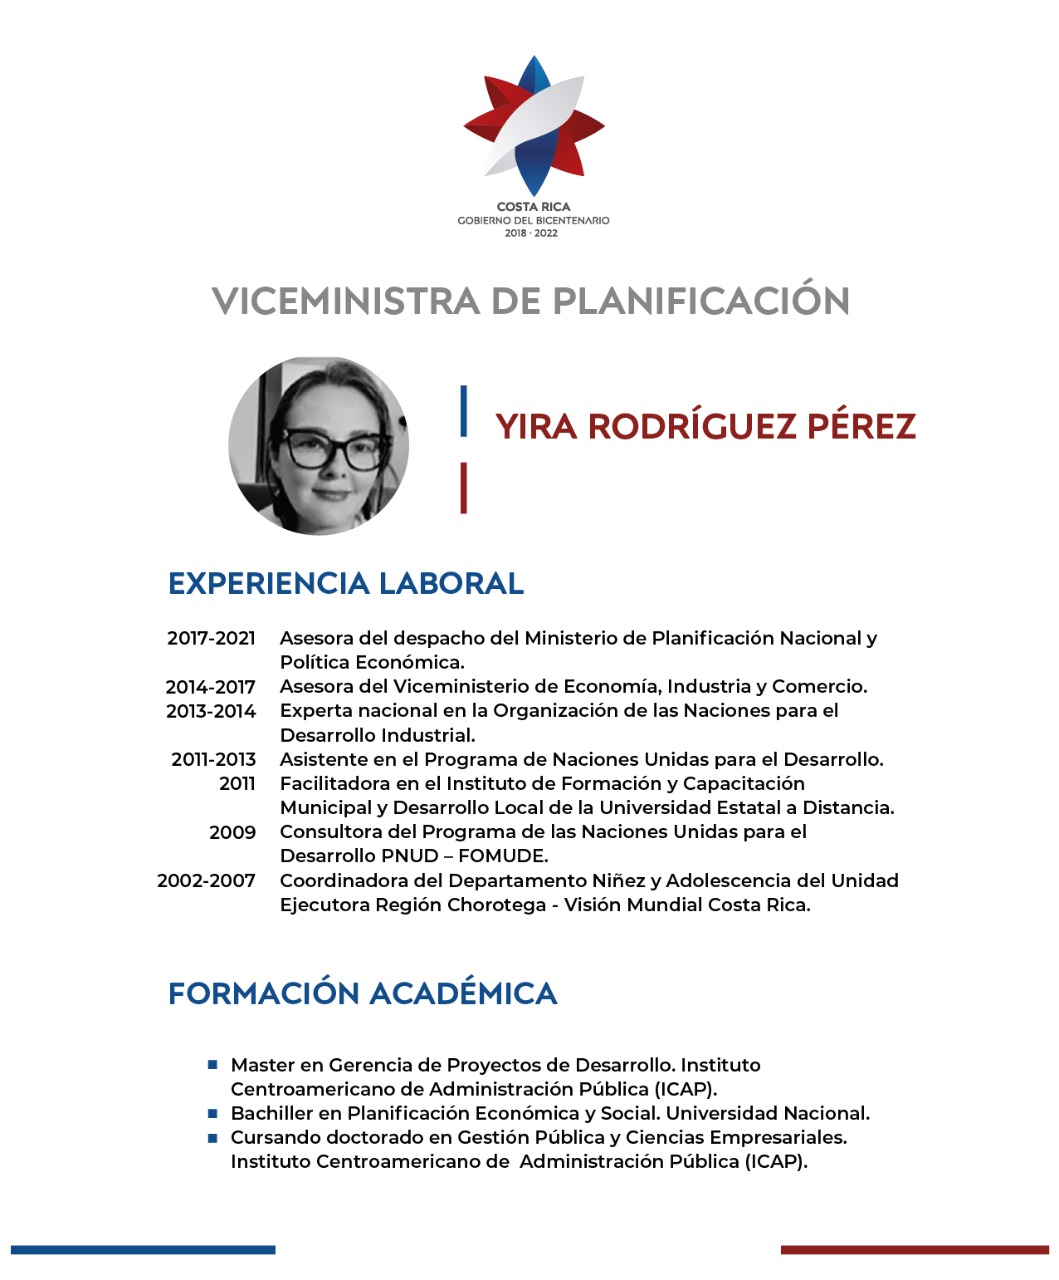 Curriculum de Yira Rodríguez